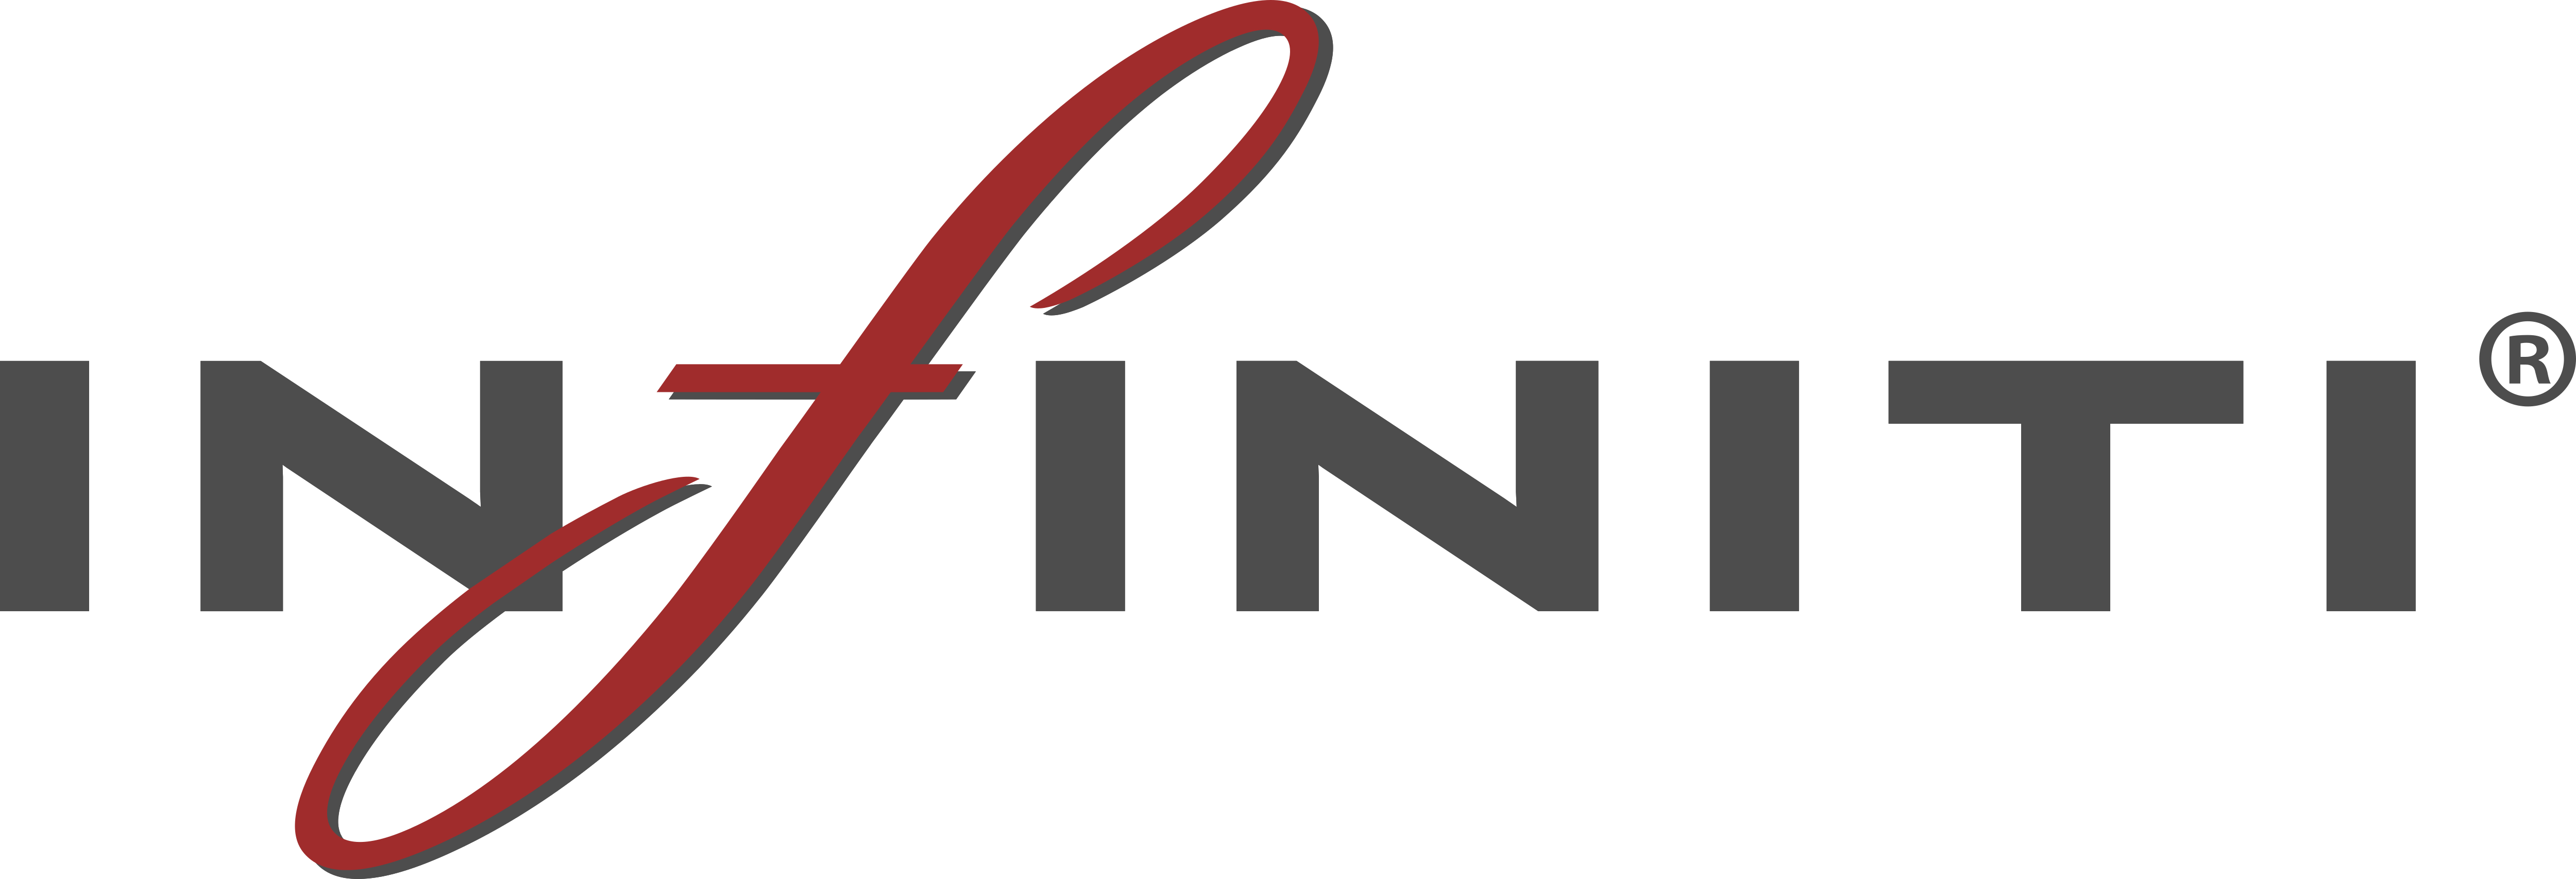 Infiniti Logo Transparent Images